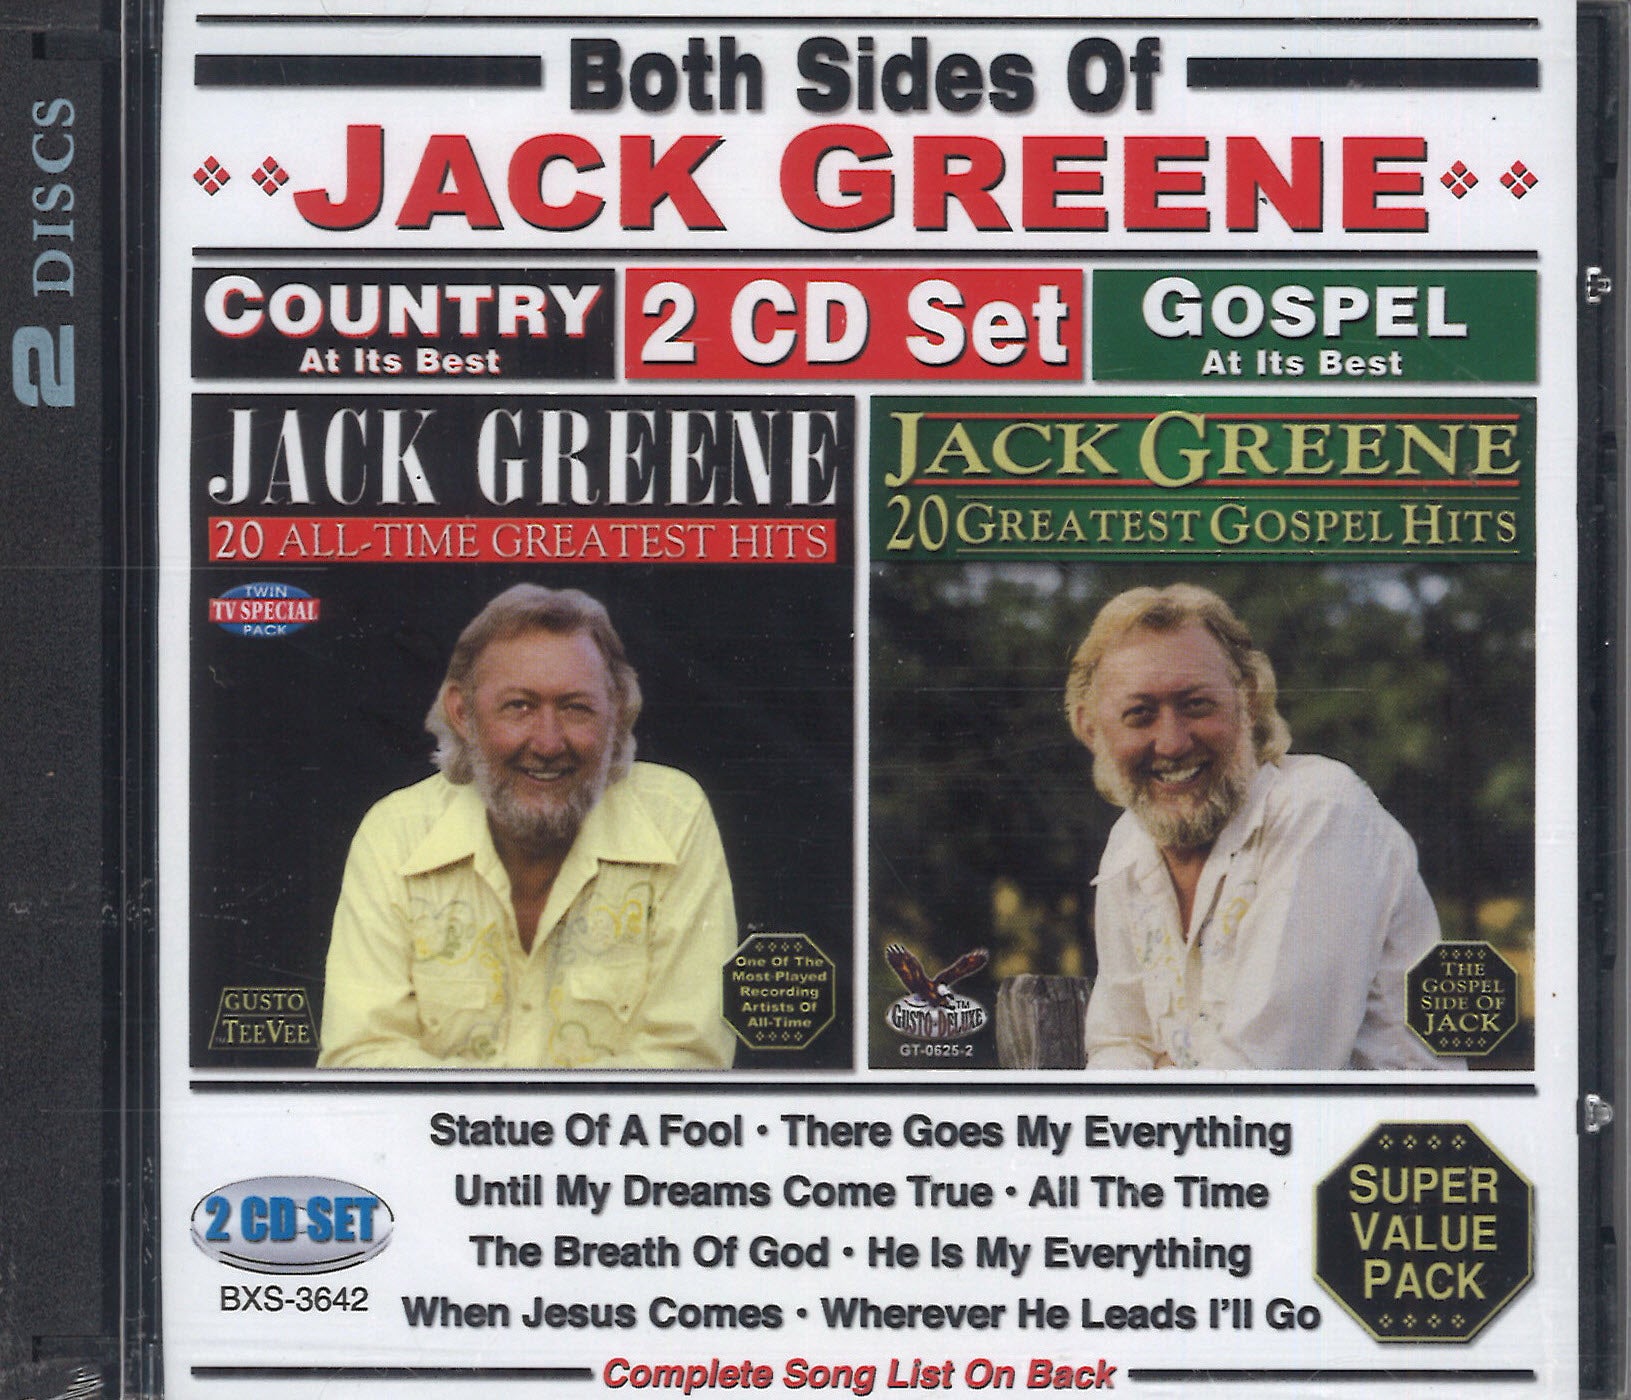 Both Sides Of Jack Greene: 2 CD Set